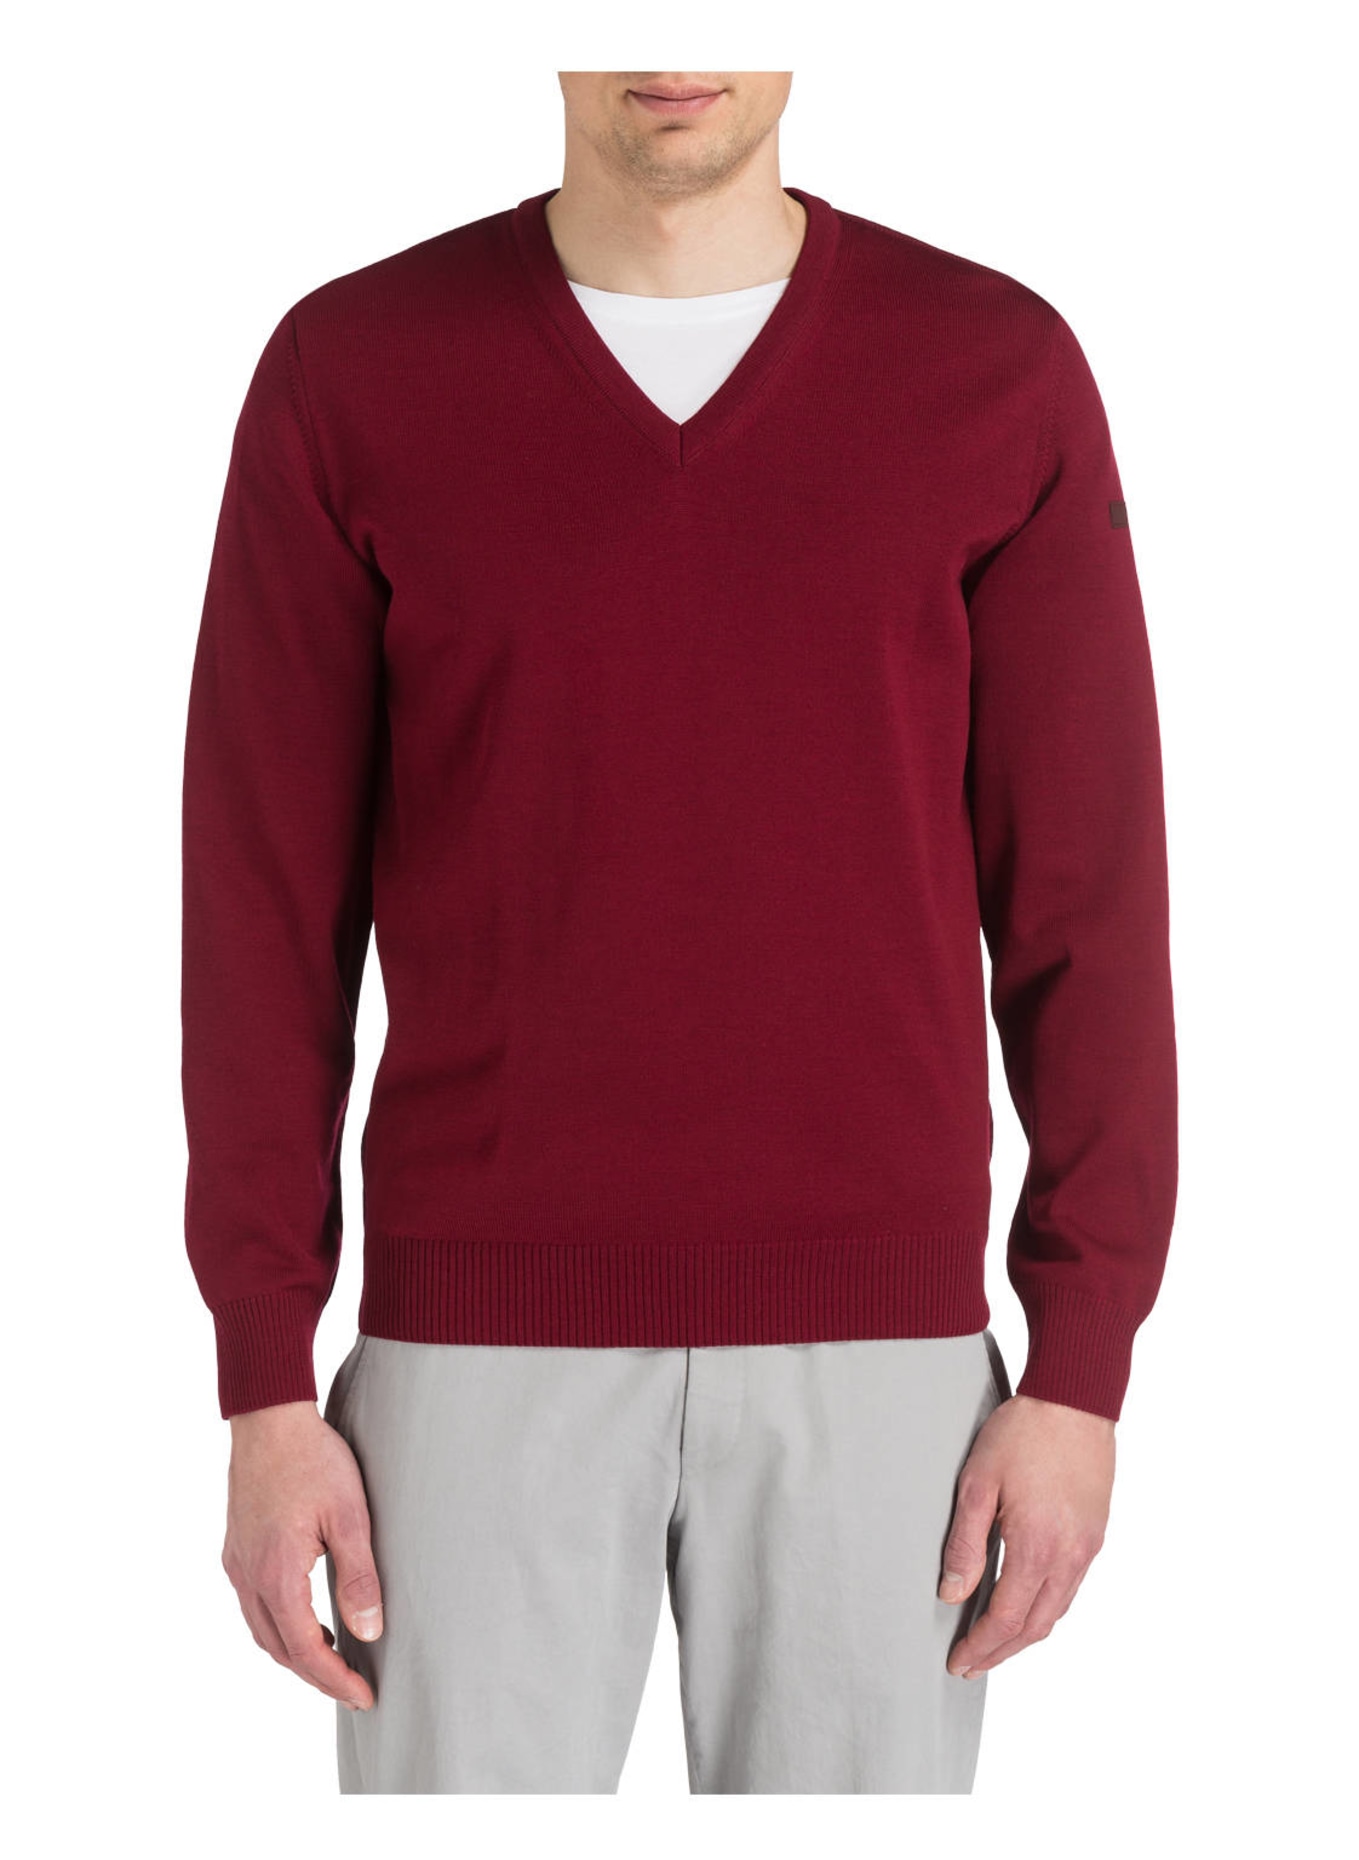 MAERZ MUENCHEN Pullover, Farbe: WEINROT (Bild 2)